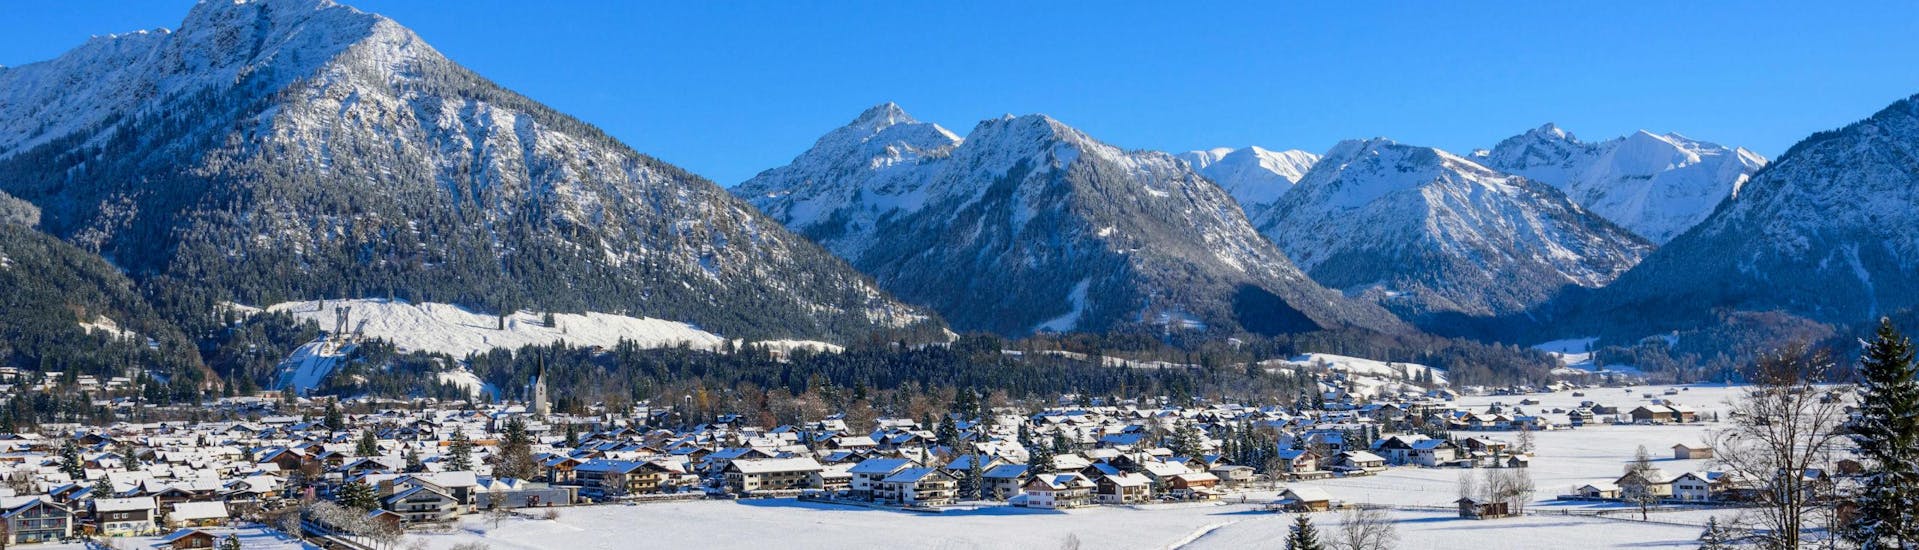 Een blik op het gezellige dorp Oberstdorf en de omringende bergen waar jong en oud van skilessen kan genieten.